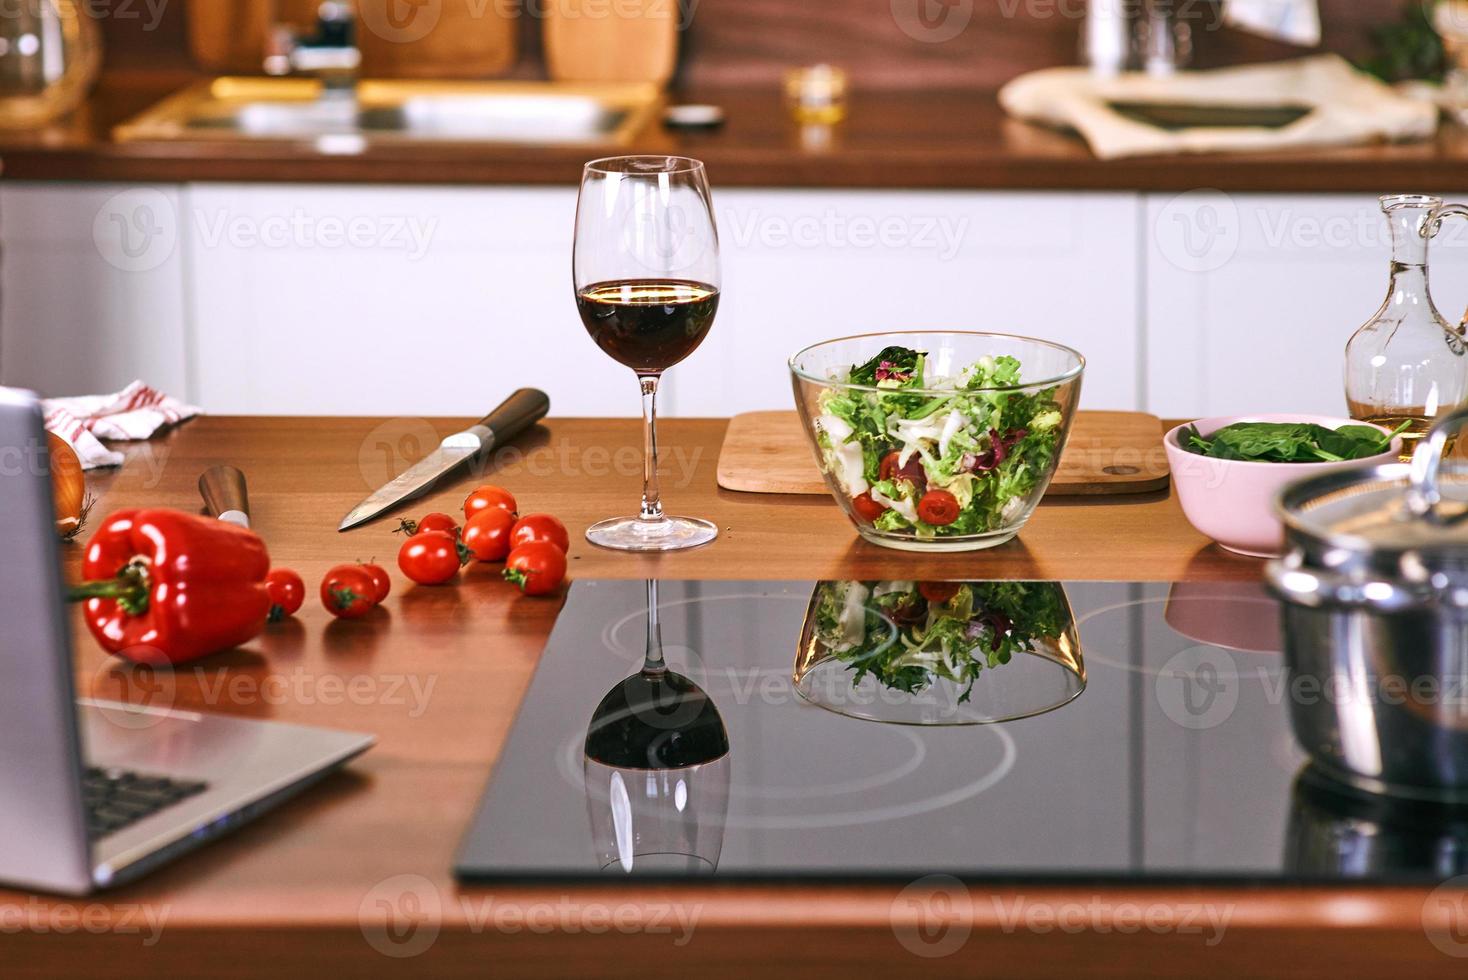 Kochprozess in der Küche - Topf, Gemüse auf dem Tisch. foto